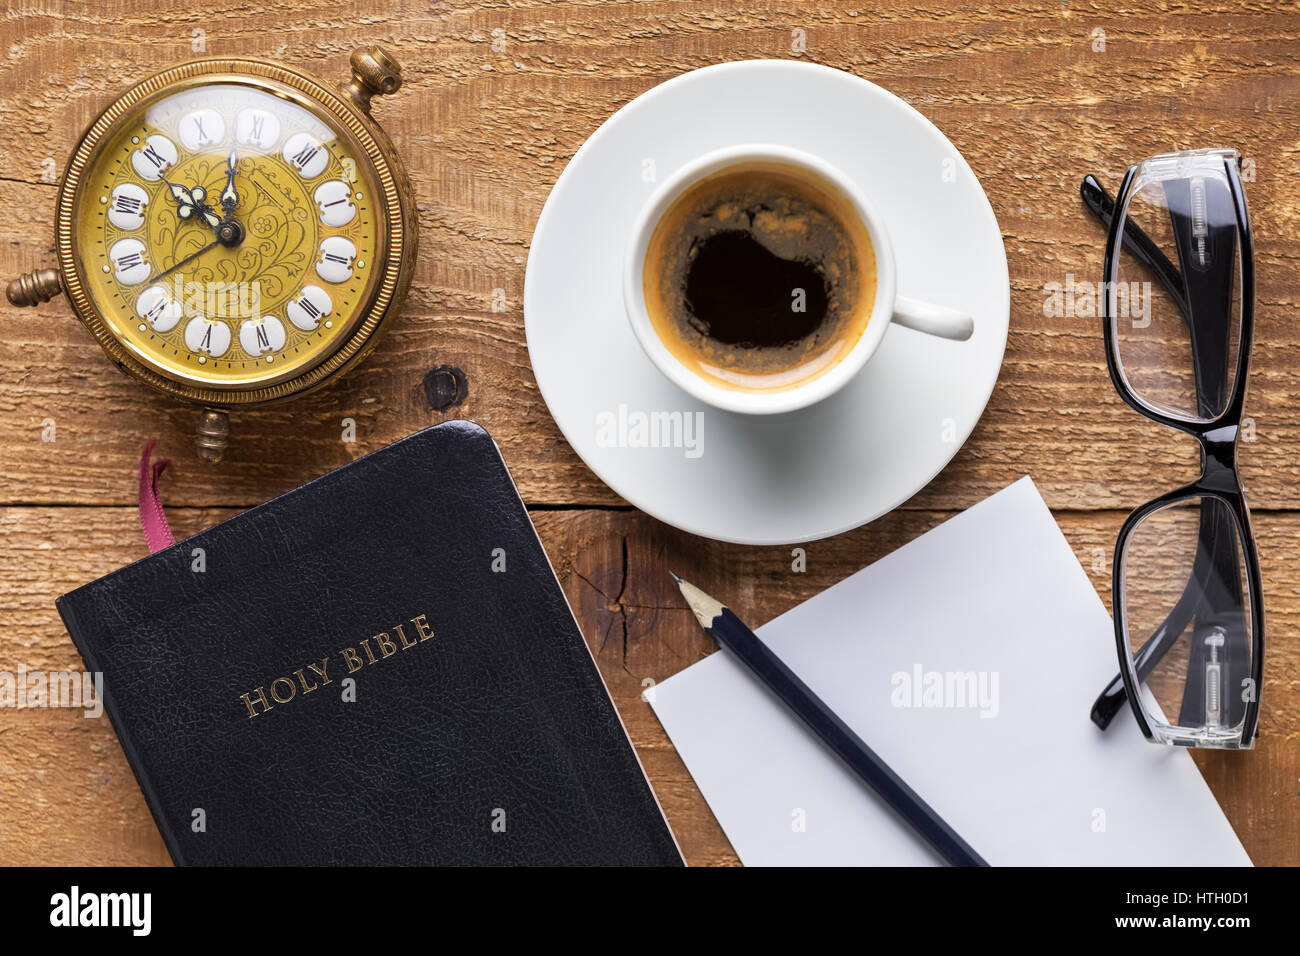 La Santa Biblia, reloj de alarma, vidrios y café en la mesa de madera. Estudiar la Biblia concepto. Se centran en la Biblia. Foto de stock